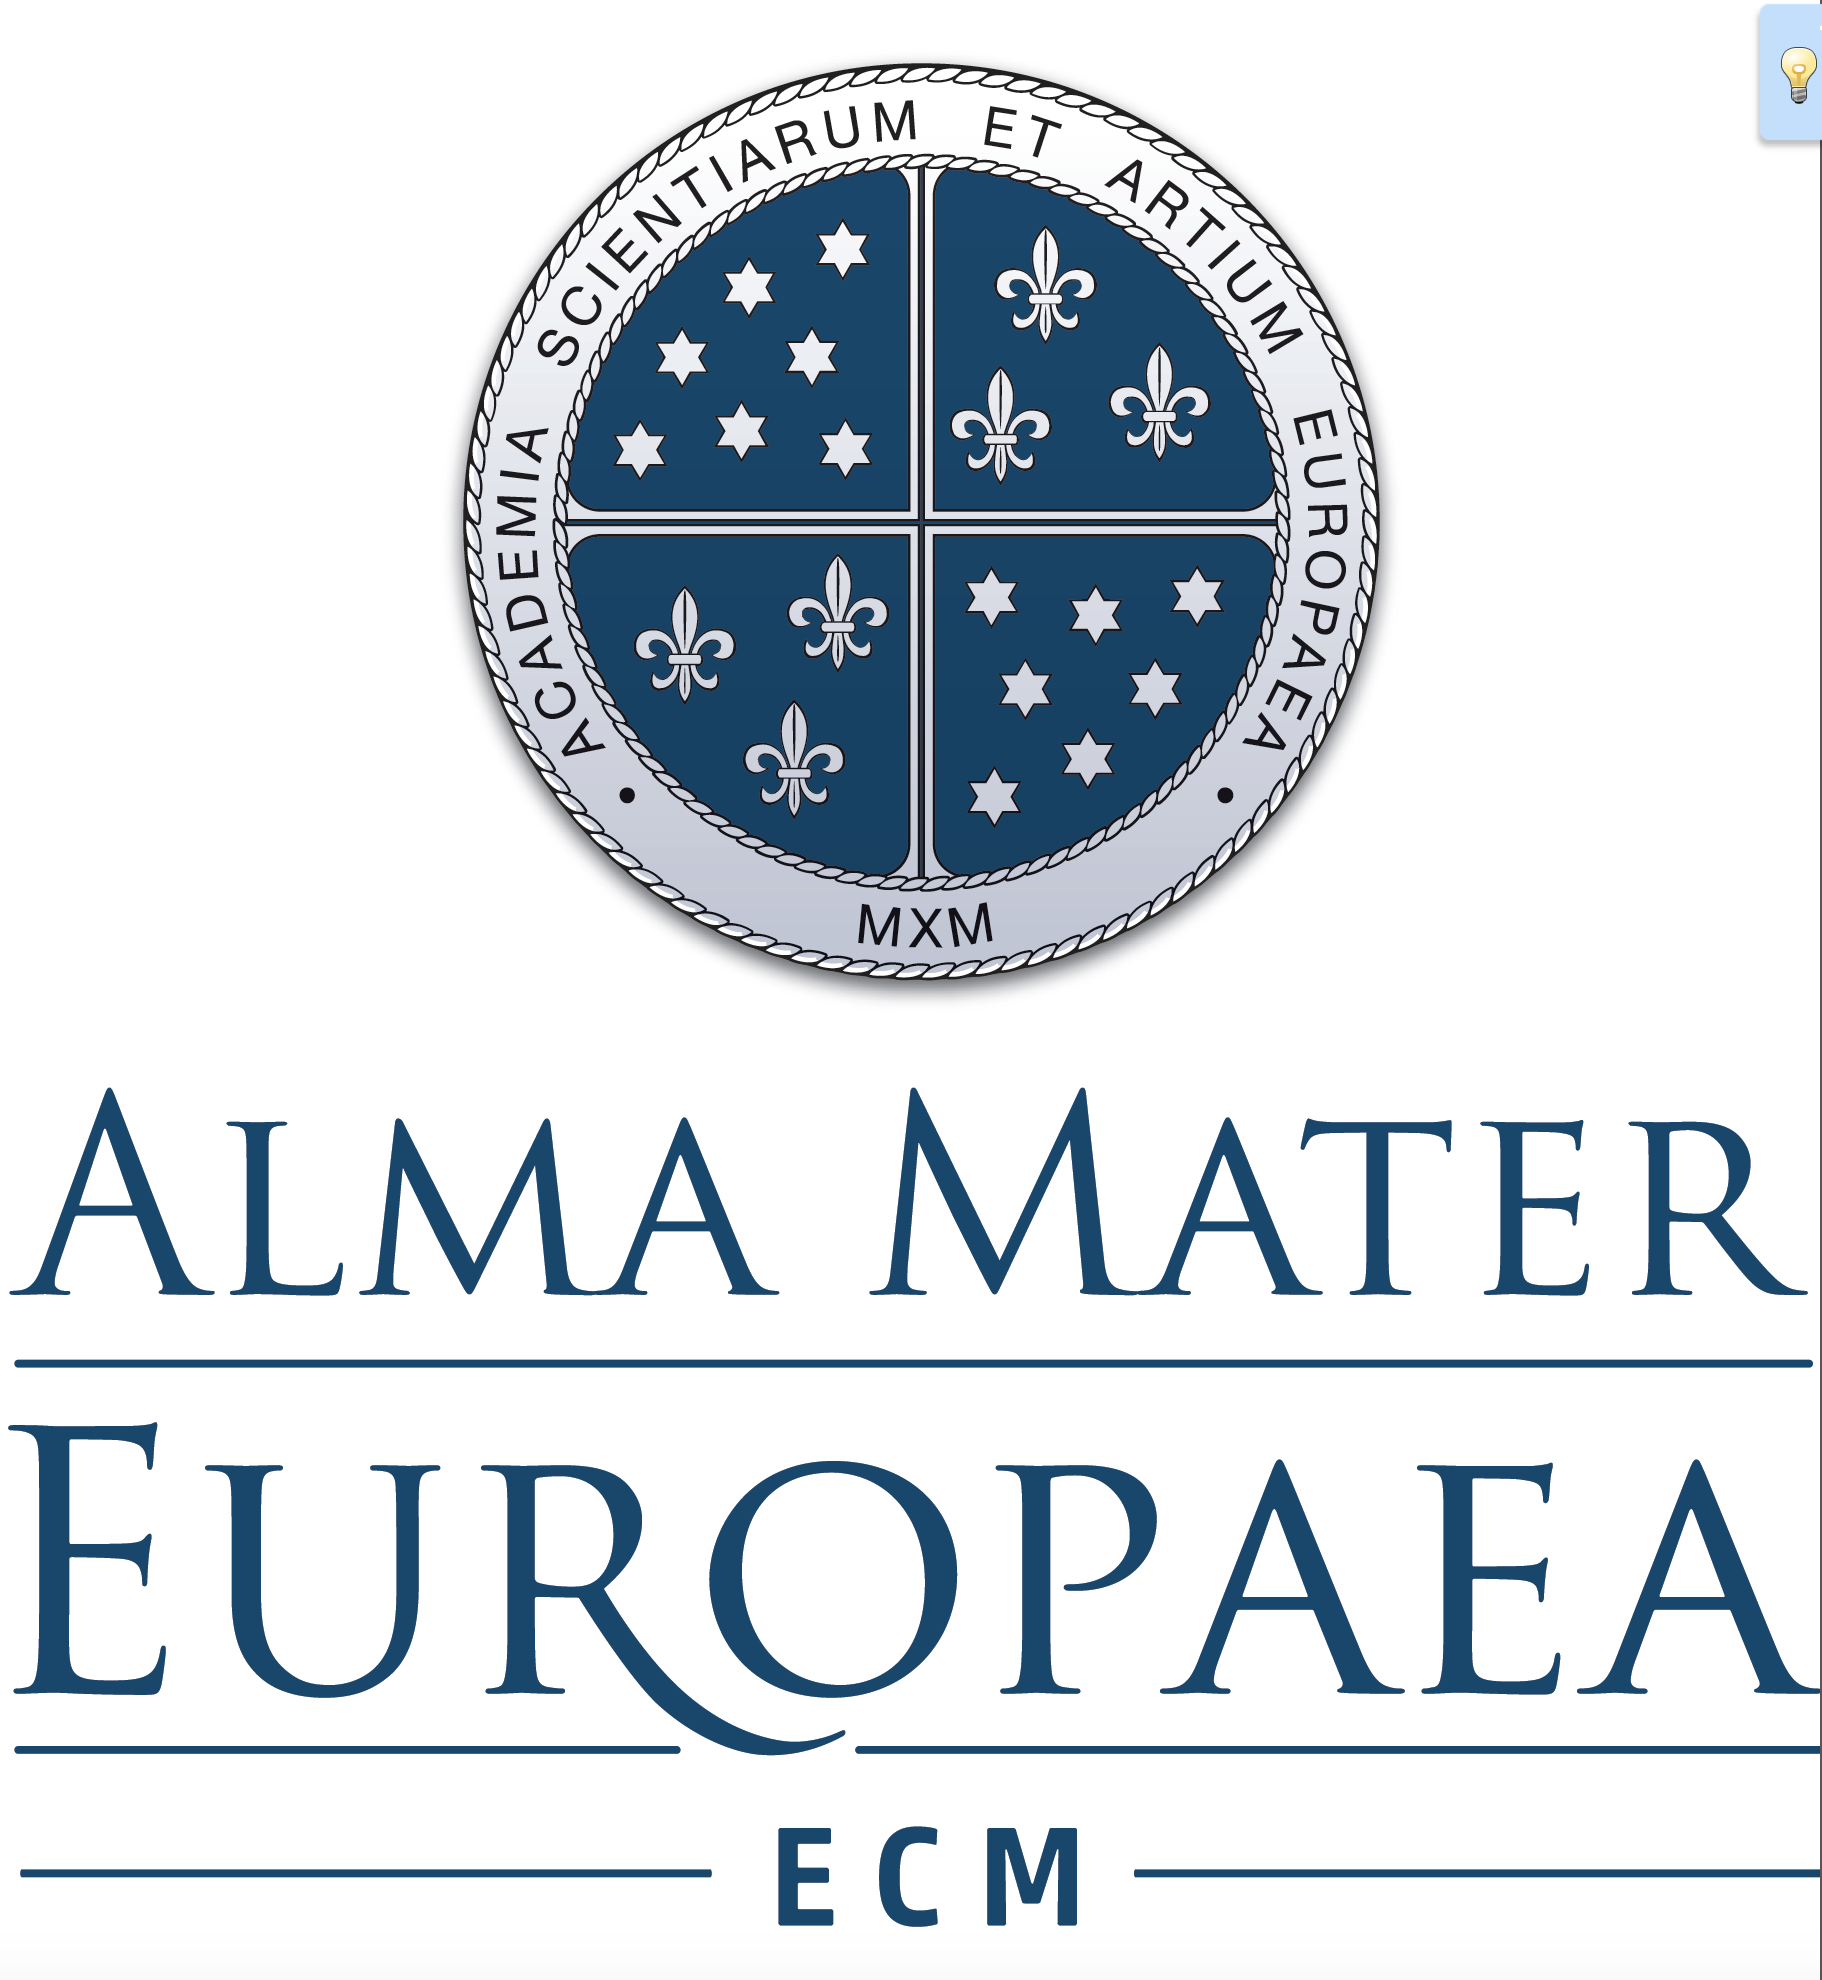 Alma mater europaea